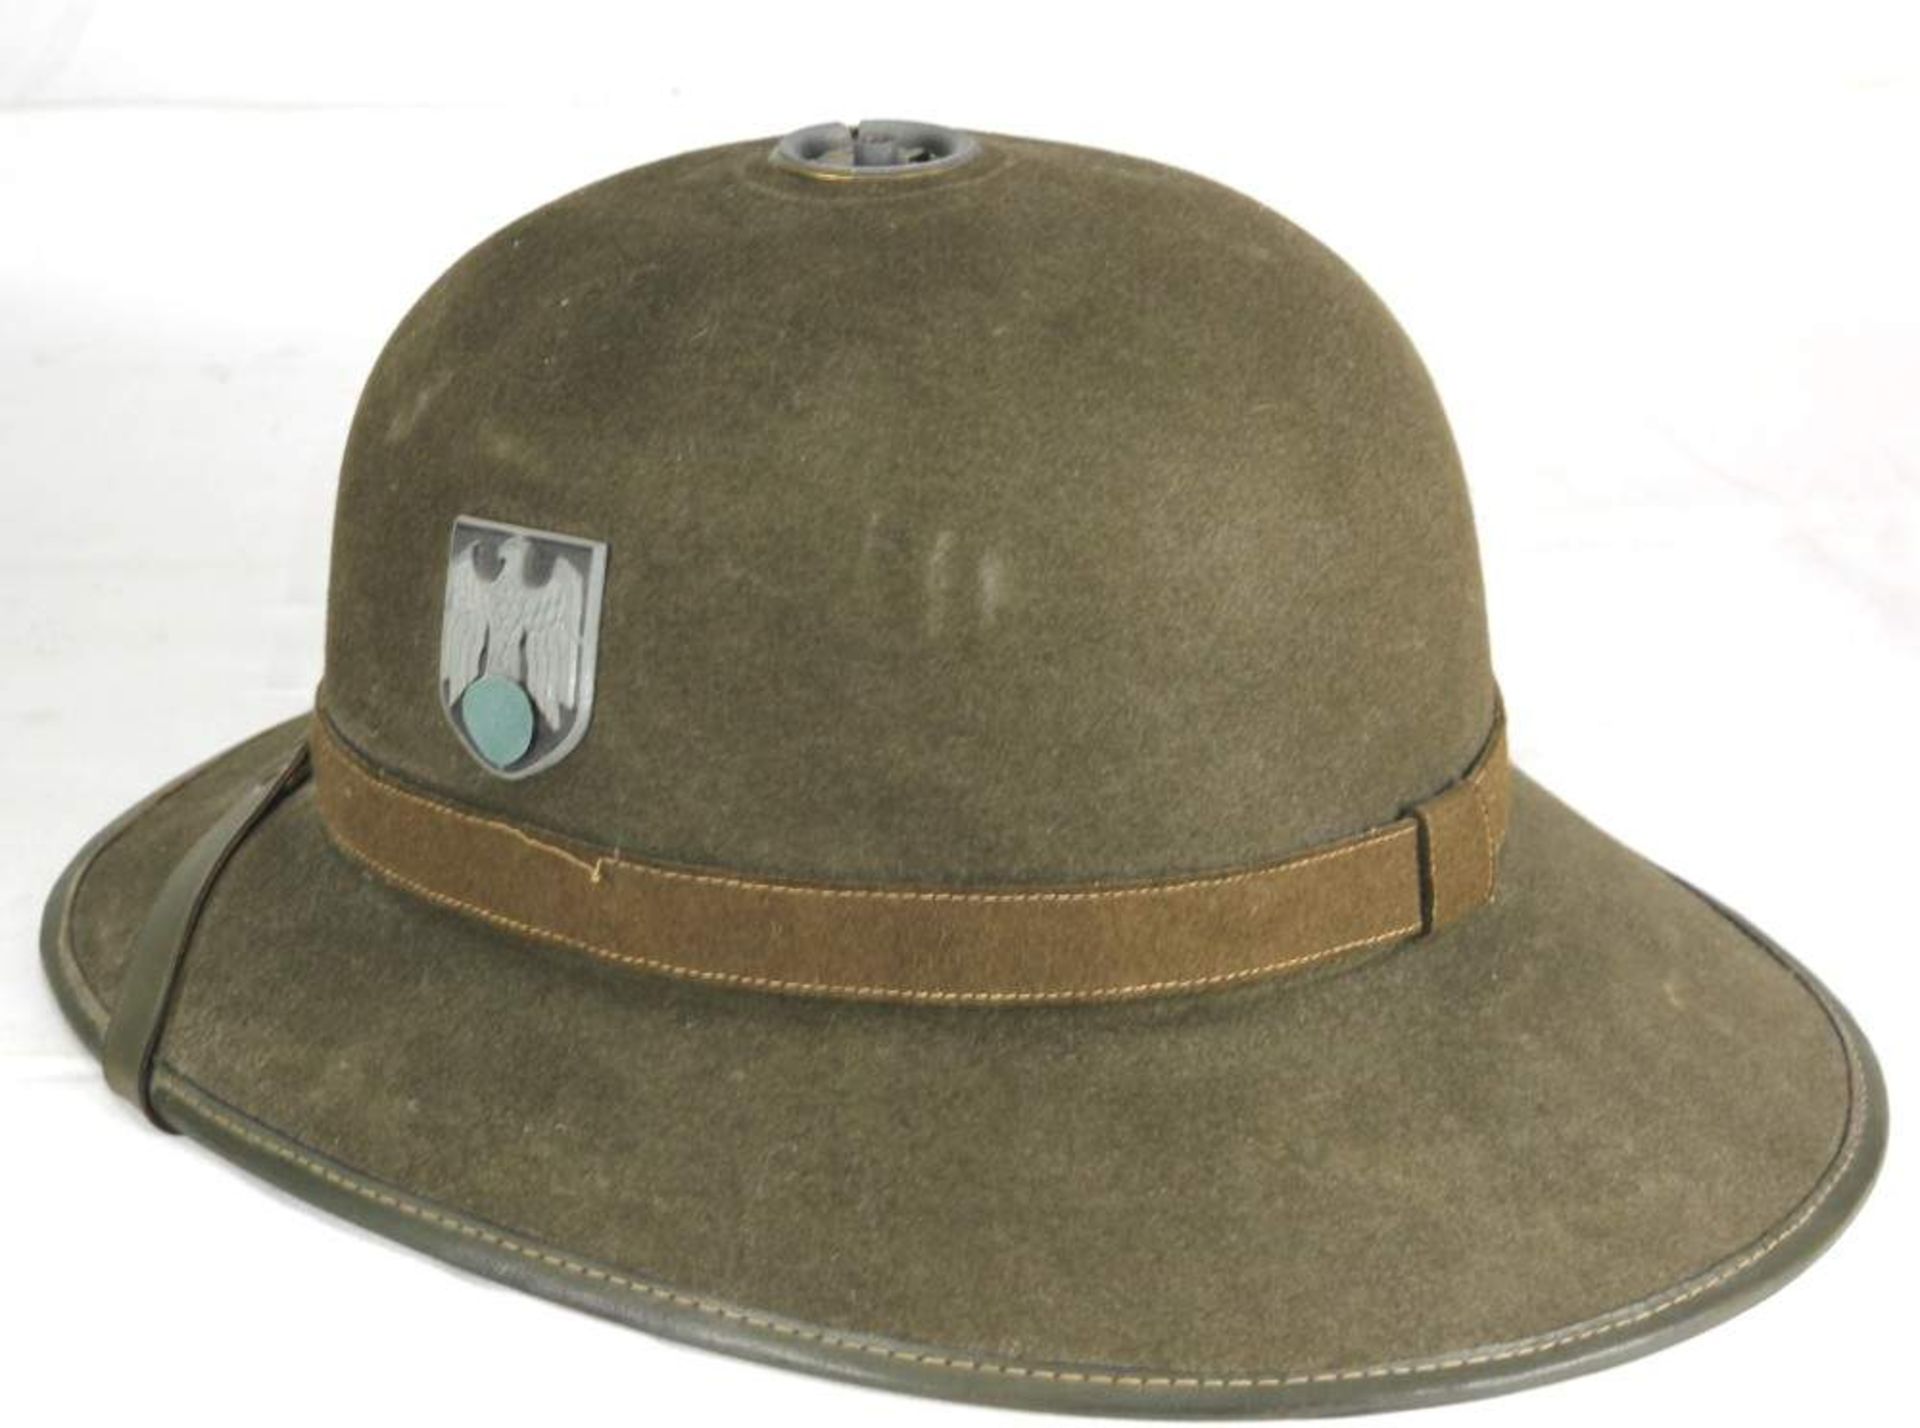 Tropenhelm III. Reich Afrikakorps. Mit den beiden Hoheitszeichen. Brauner Filz mit grünem und